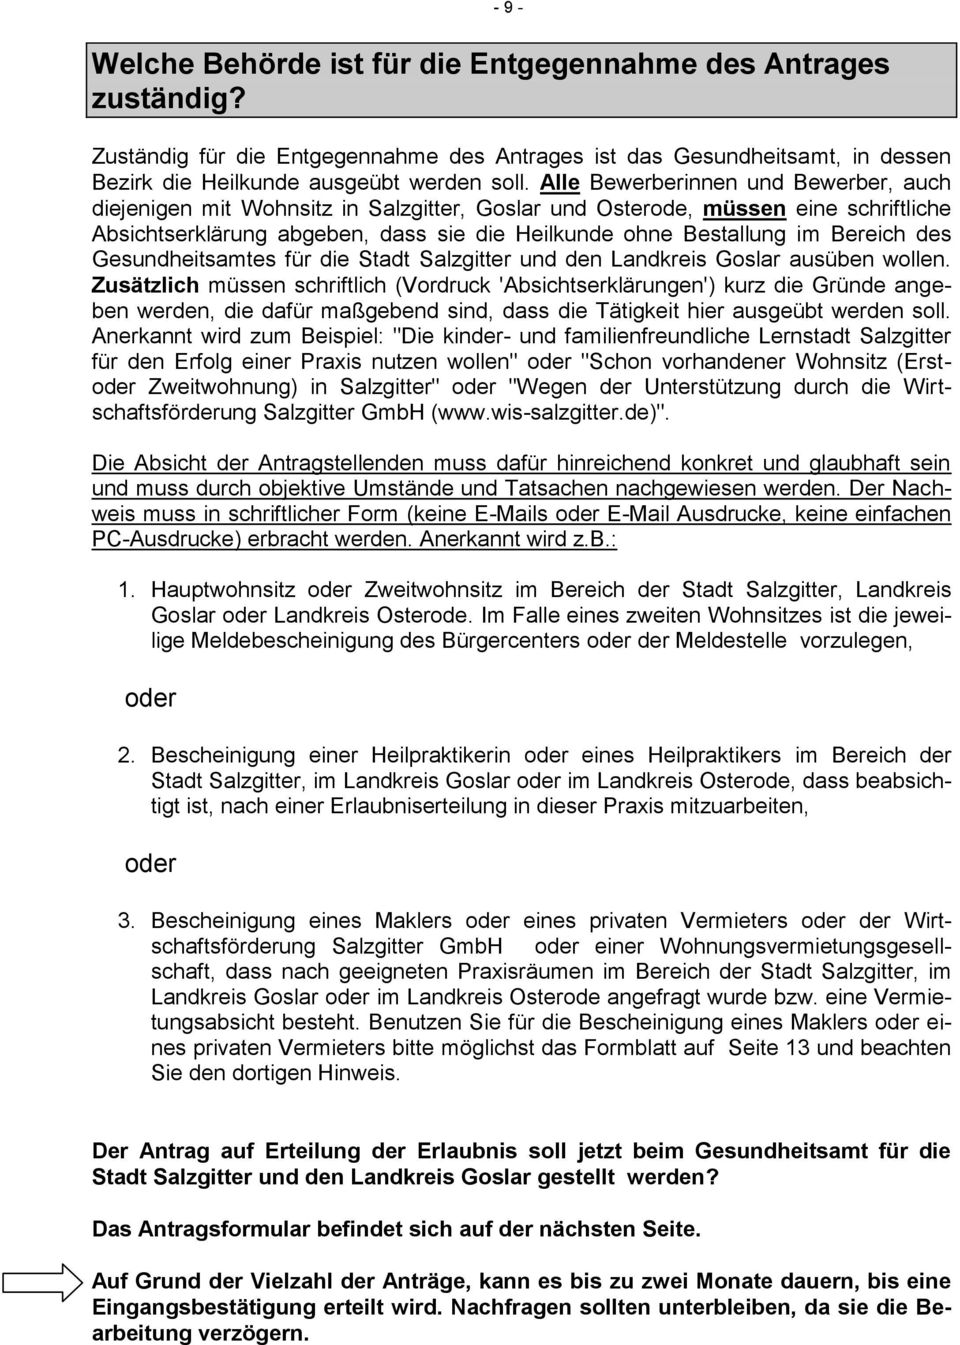 des Gesundheitsamtes für die Stadt Salzgitter und den Landkreis Goslar ausüben wollen.